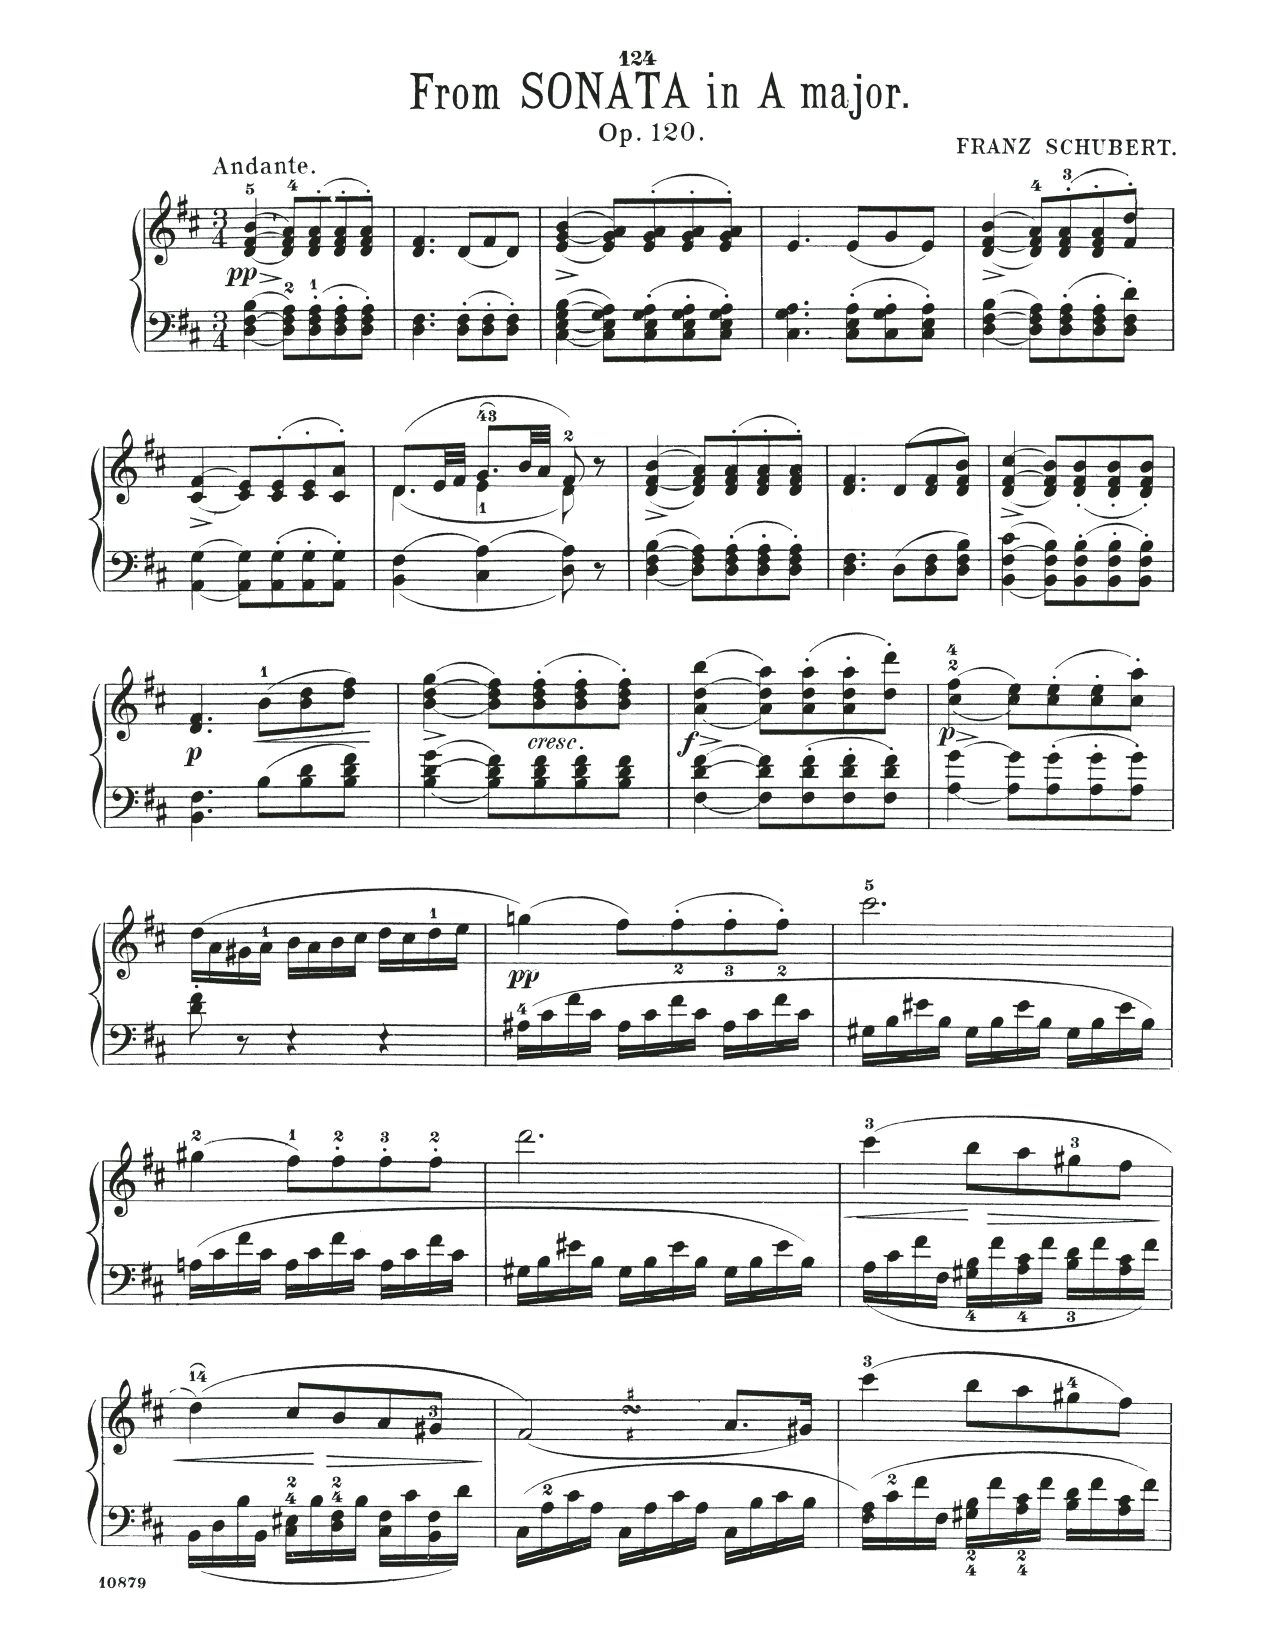 Download Franz Schubert Sonata In A Major, Op. 120, 2nd mvt Sheet Music